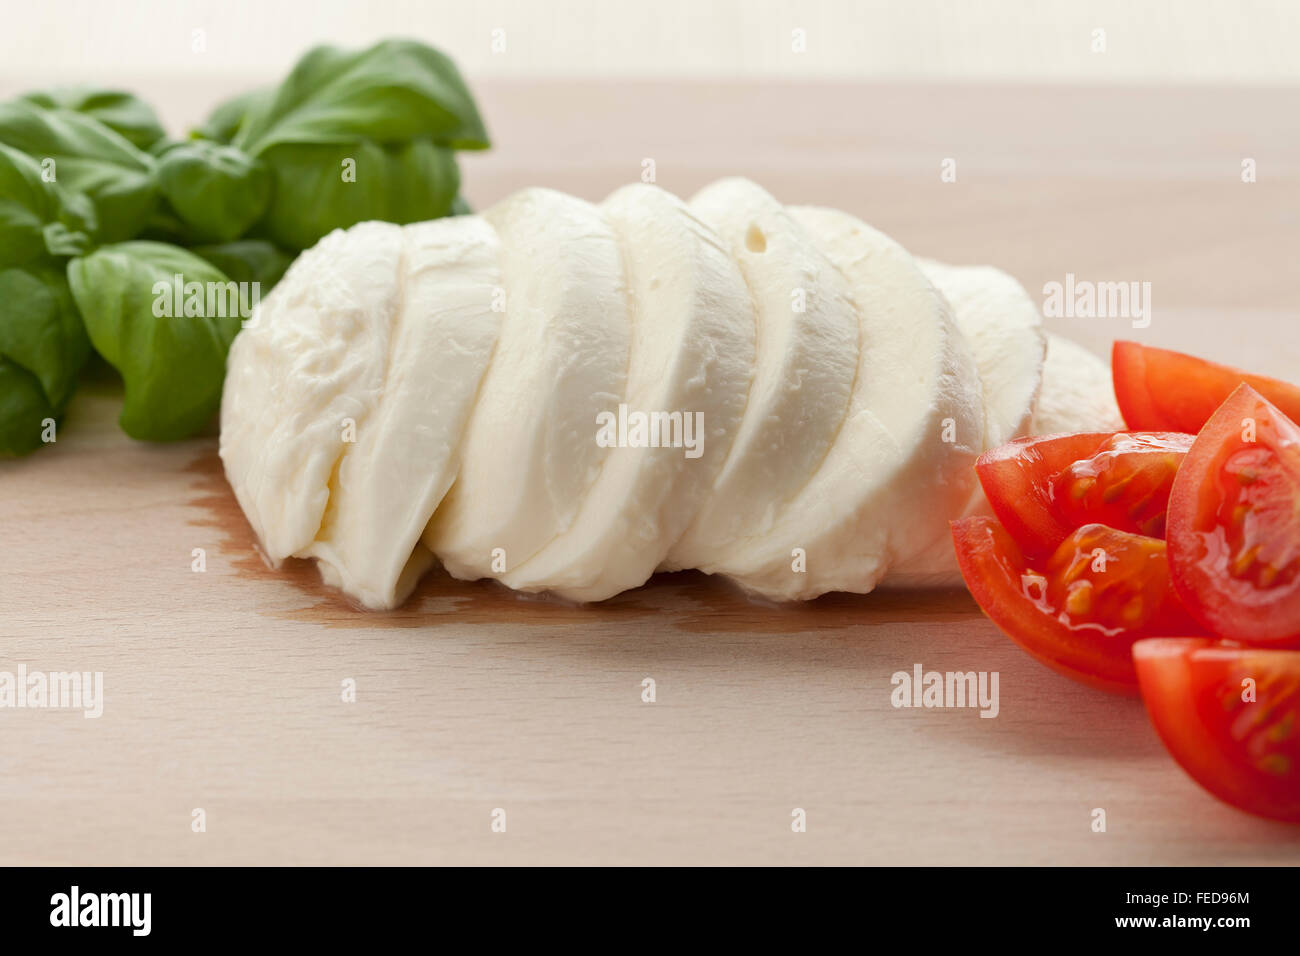 Rodajas de mozzarella fresca con las hojas de albahaca y tomates en placa de madera Foto de stock